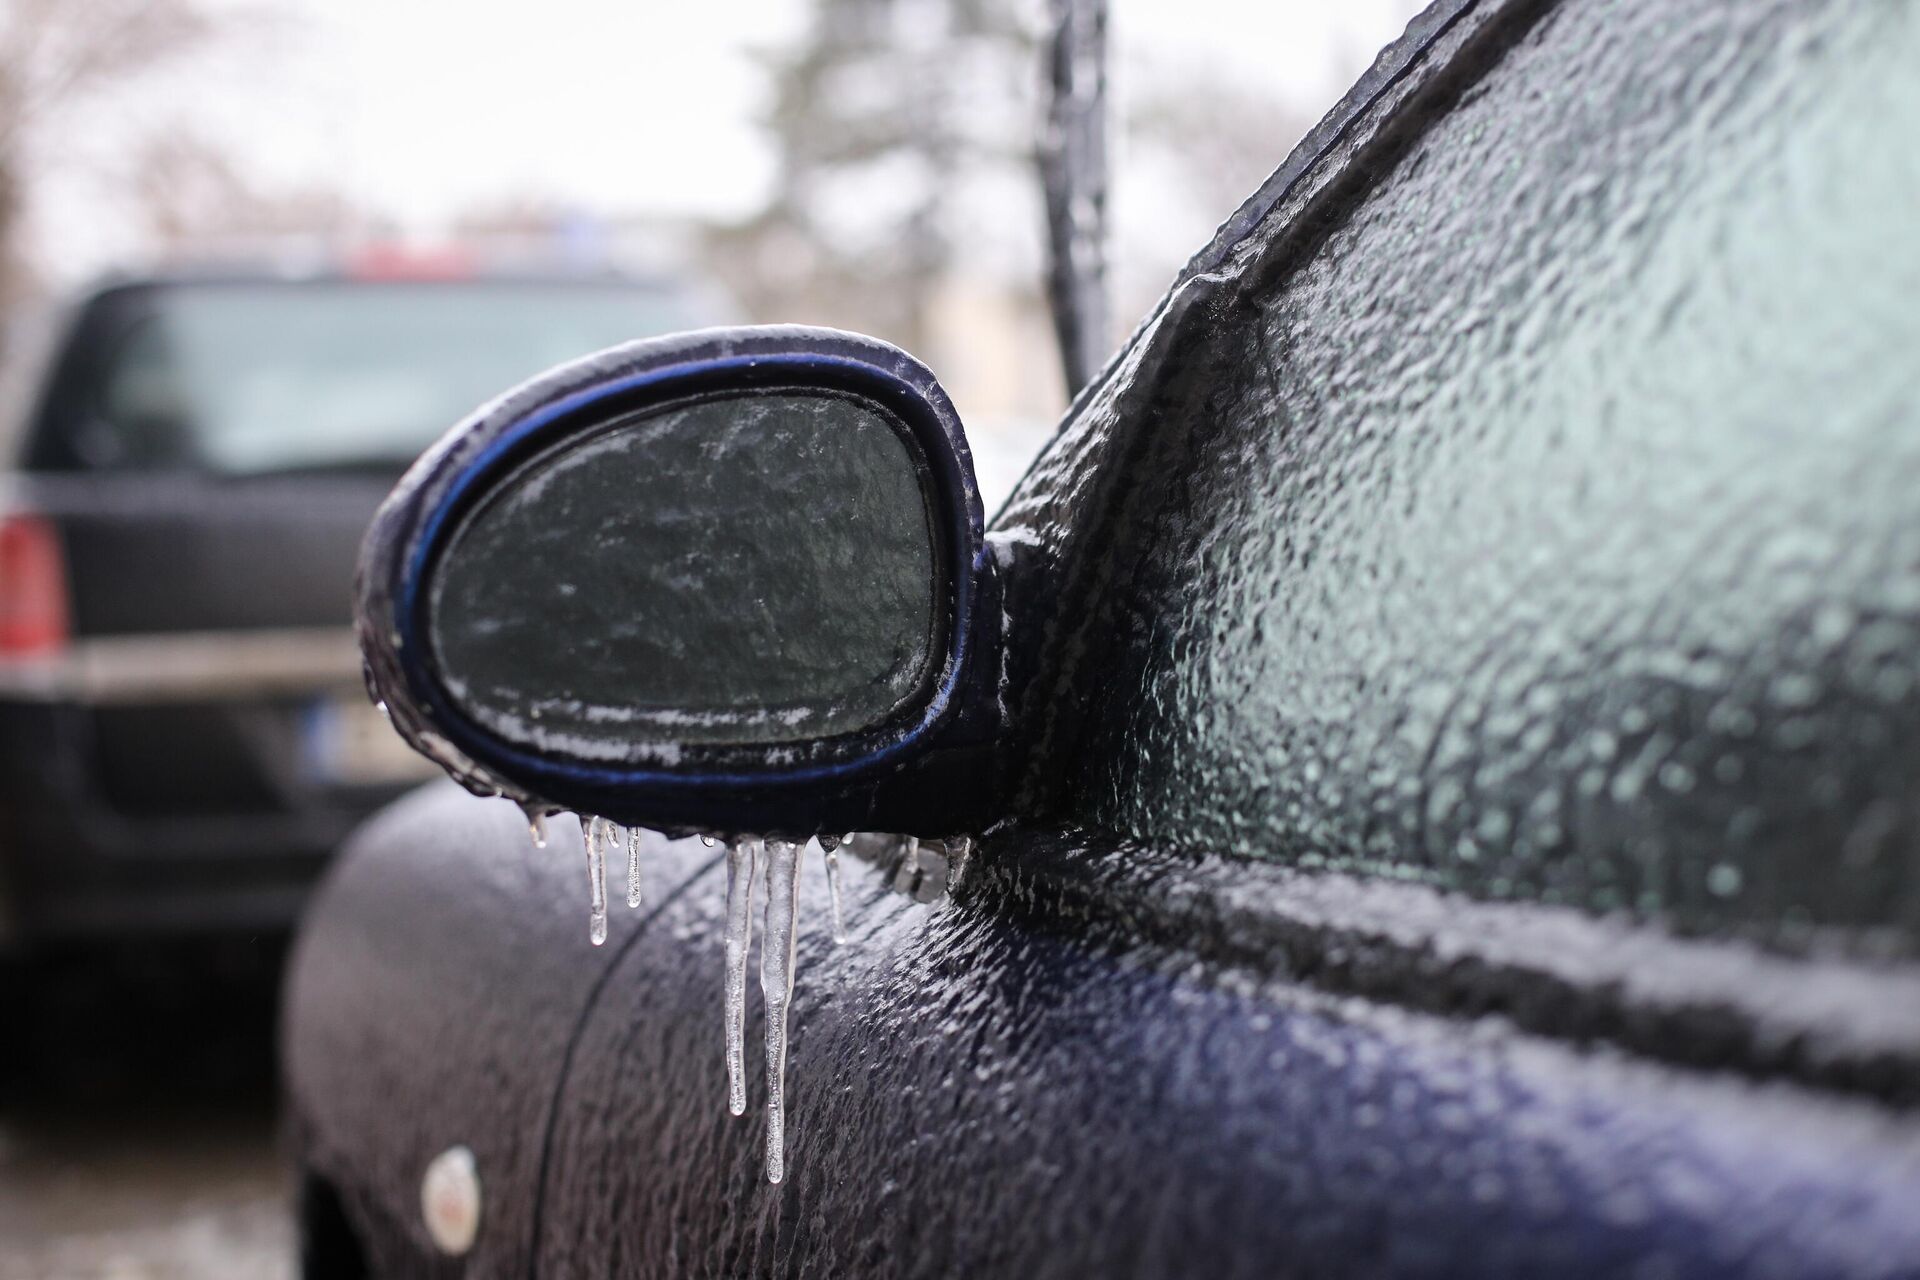 Шесть способов решить проблему замерзания стекол автомашины зимой